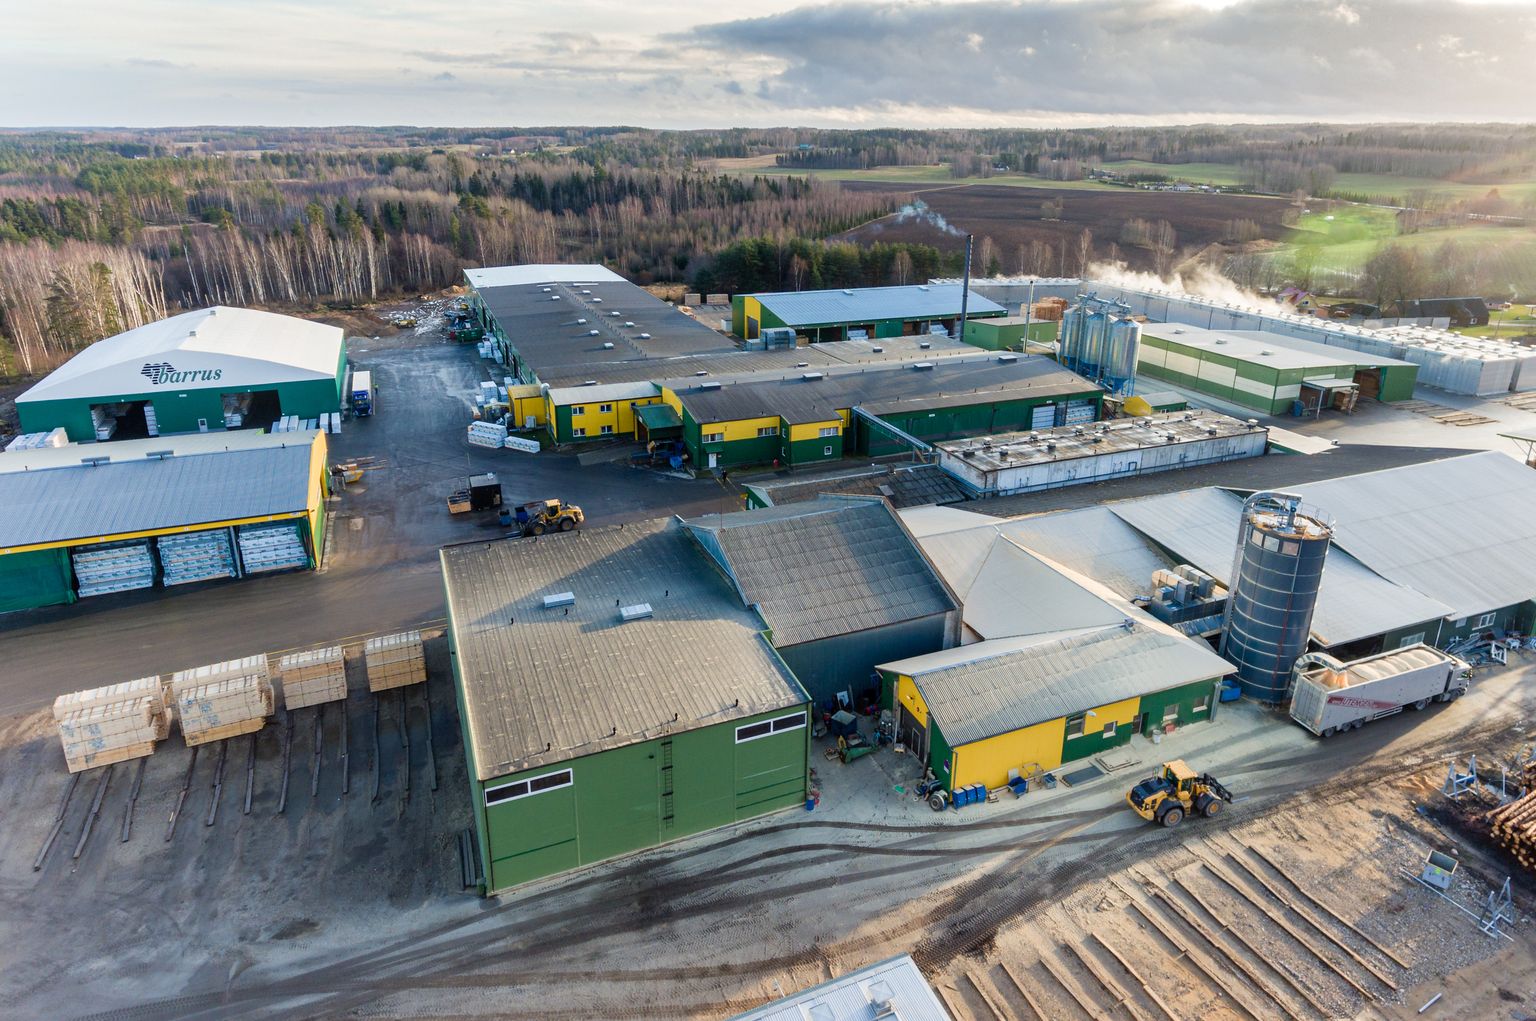 Ettevõte Barrus tegutseb Võru külje all Verijärvel ning seal toodetakse 75 000 kuumpeetrit liimpuitu aastas.